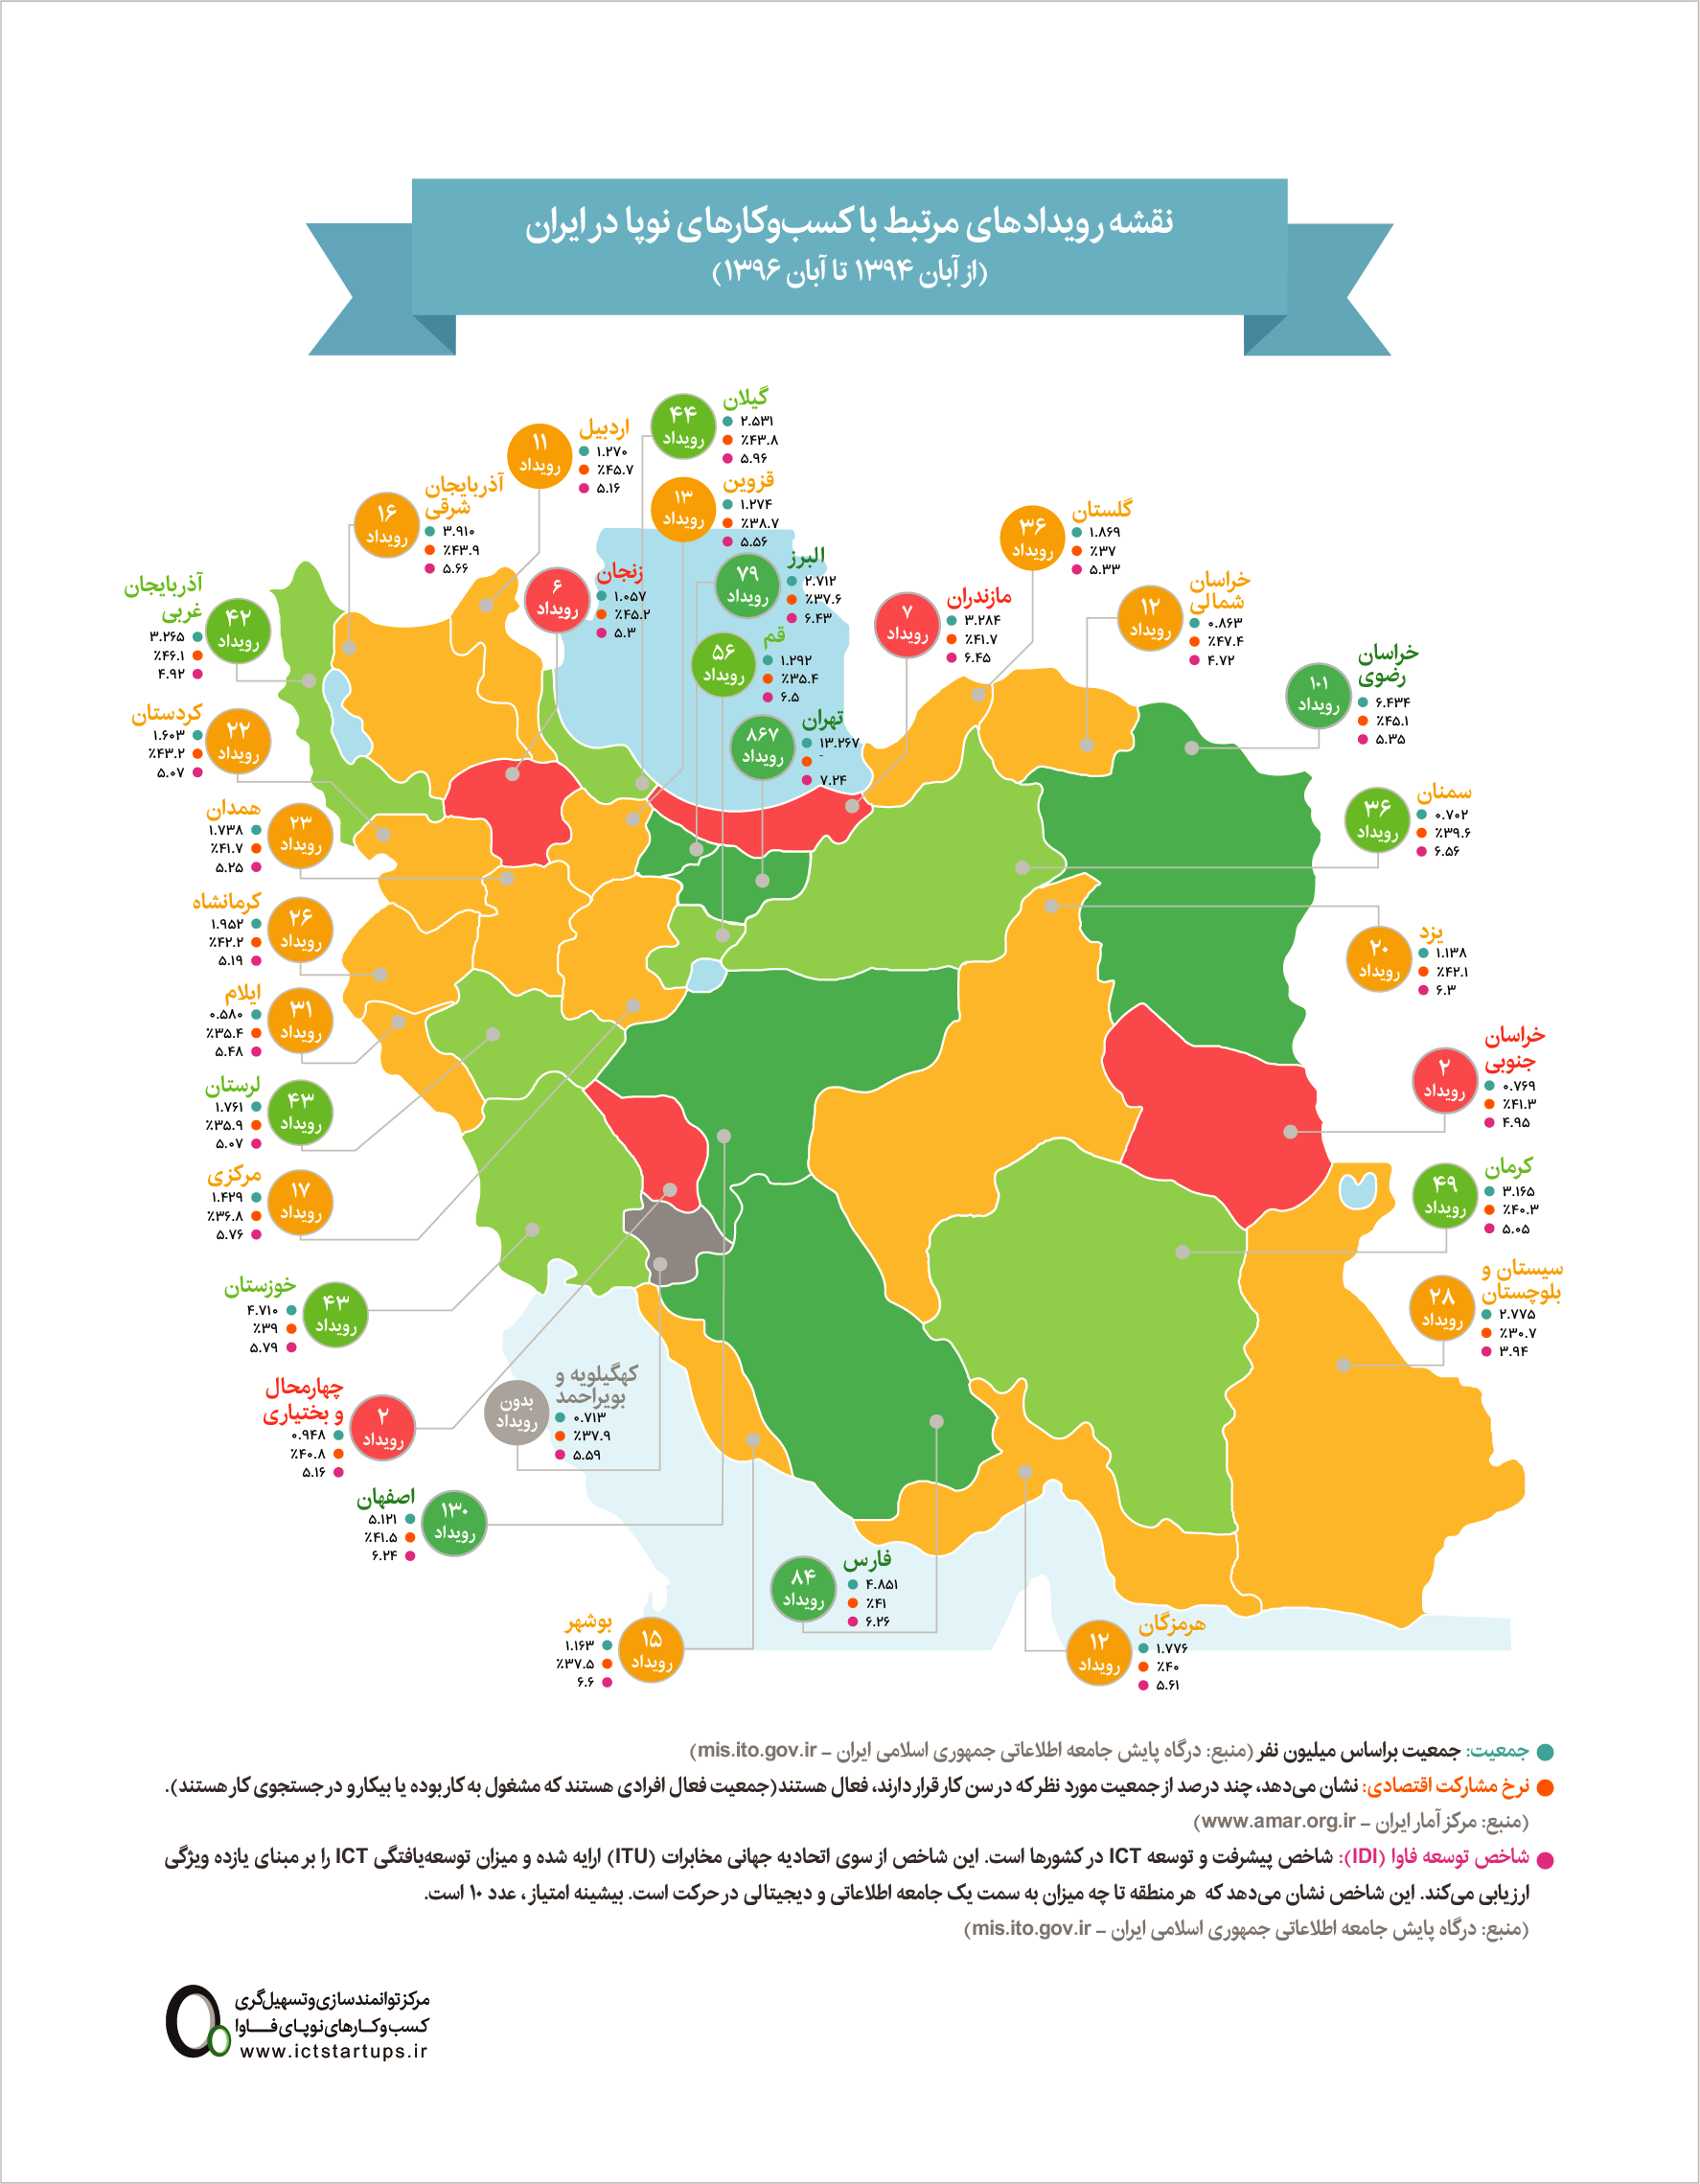 نقشه رویدادهای مرتبط با کسب و کارهای نو در ایران